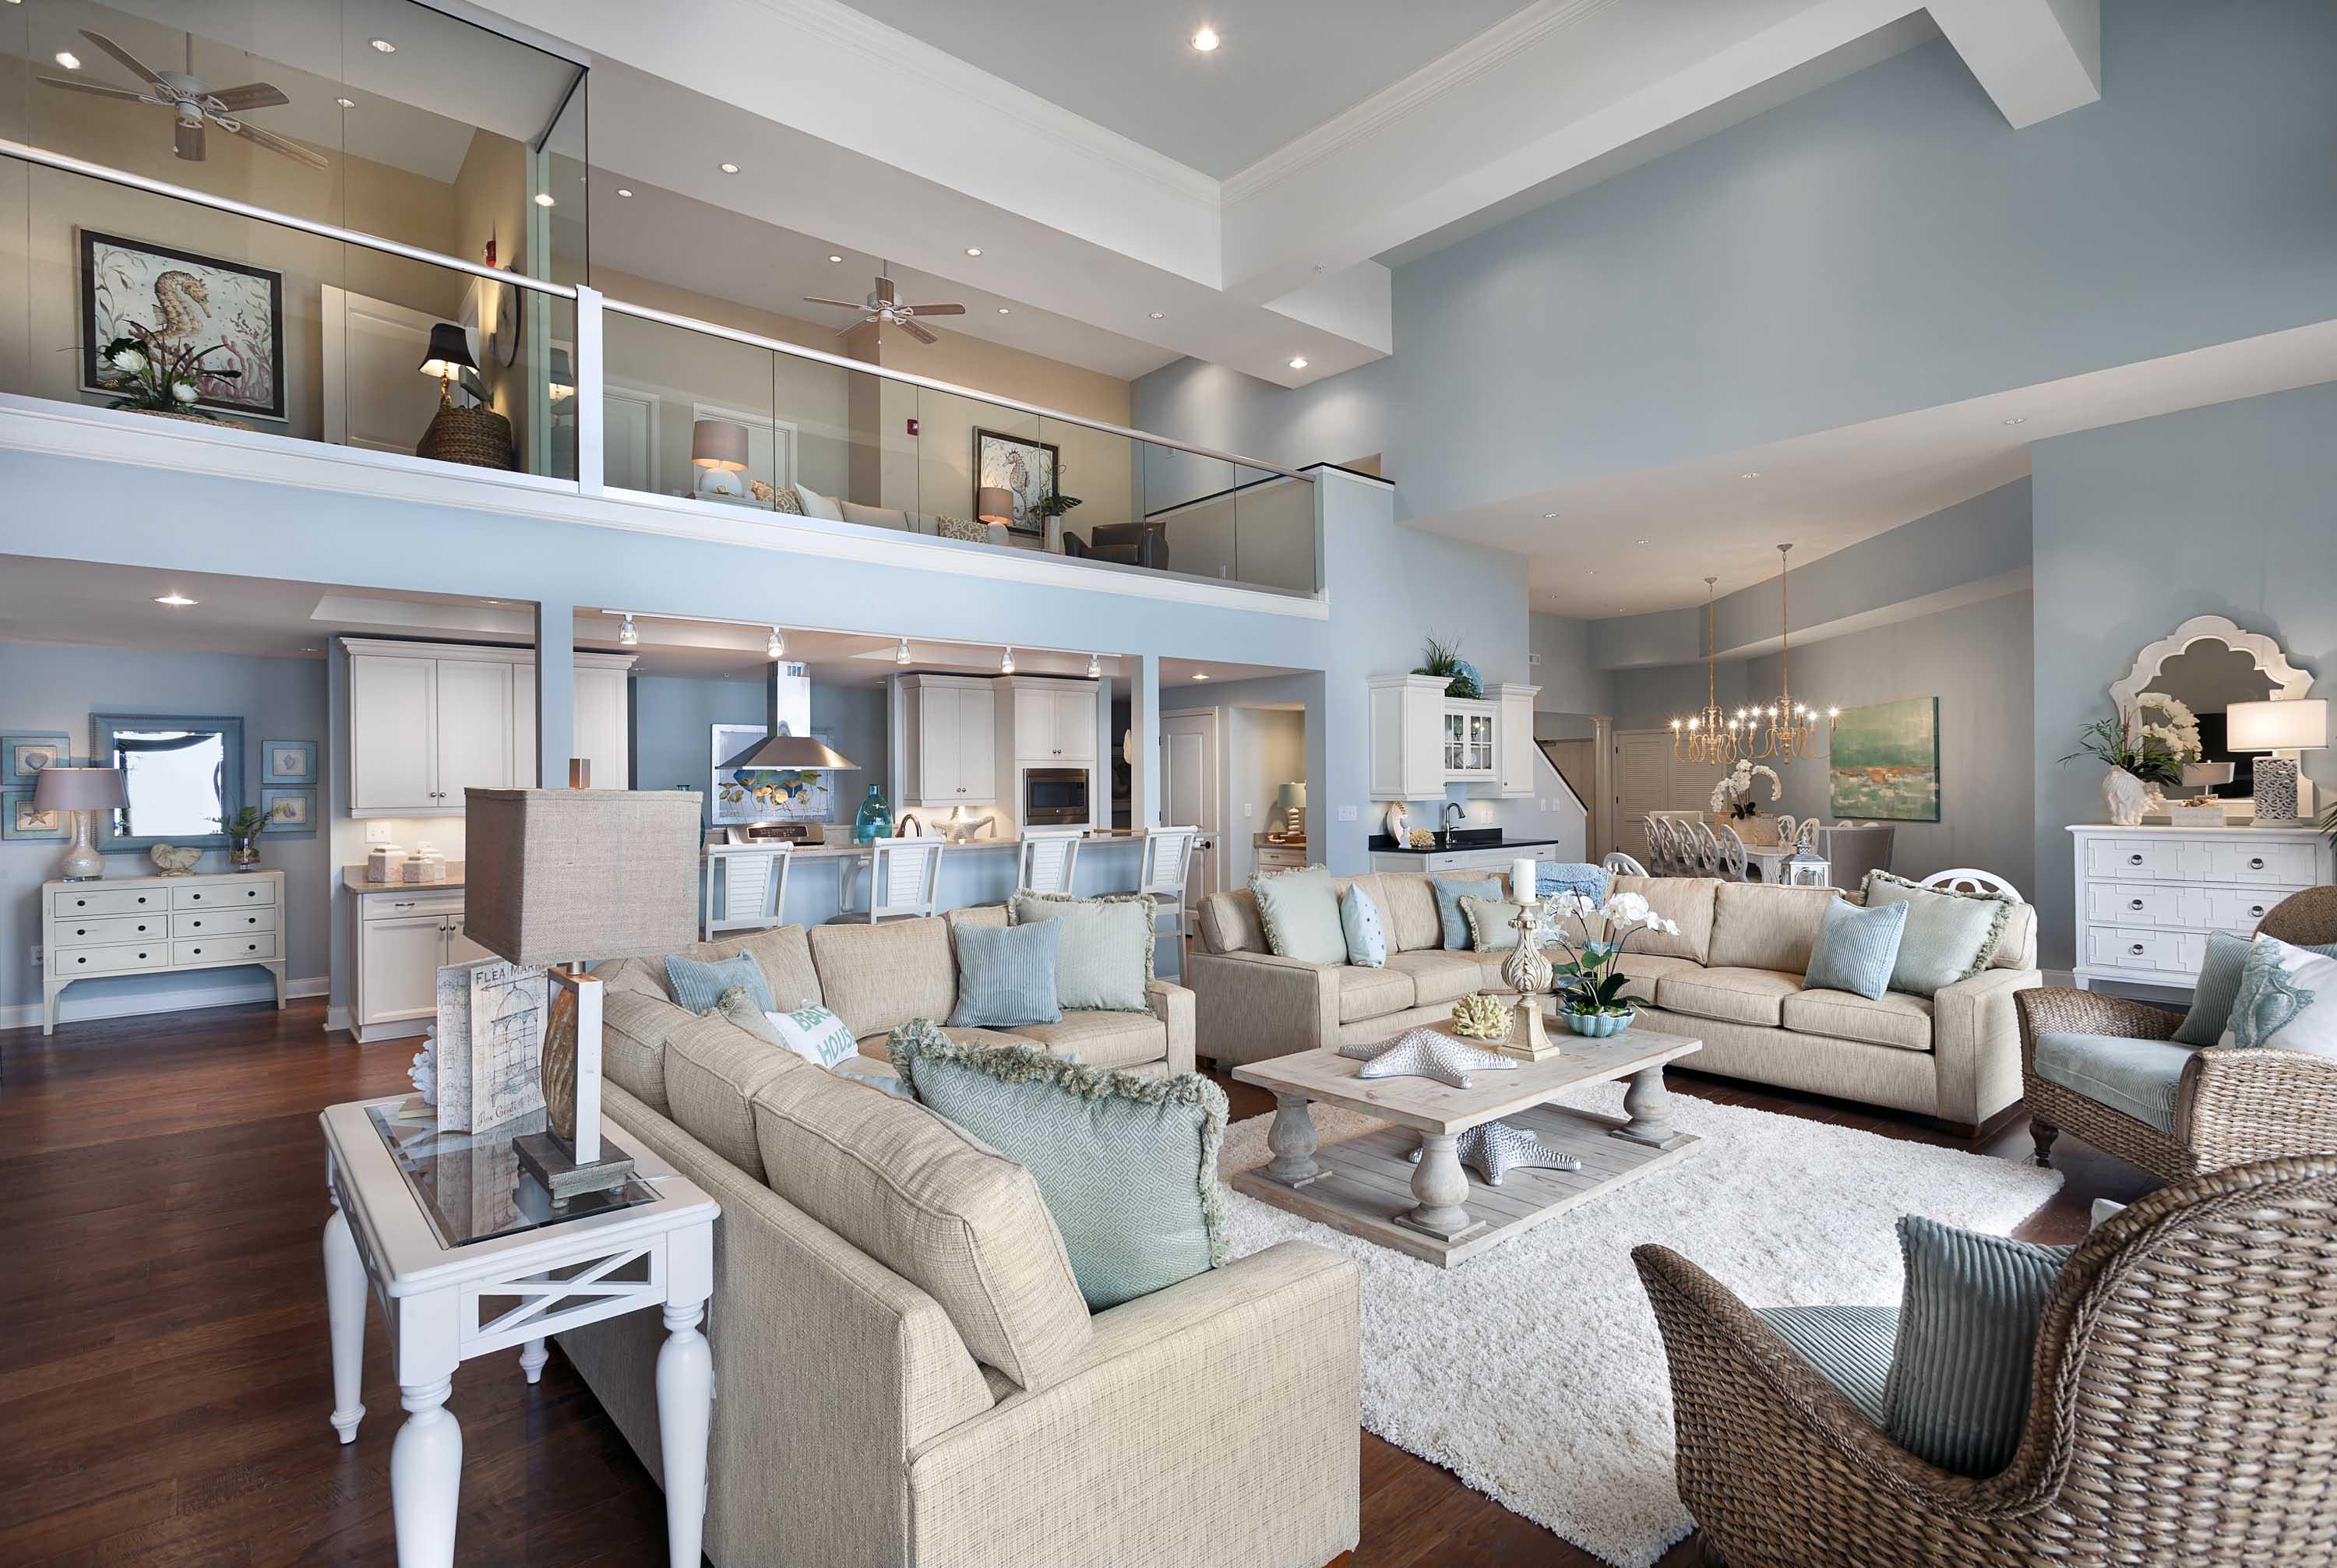 North Beach Resort & Villas - 7 Bedroom Oceanfront Penthouse - The Bridge